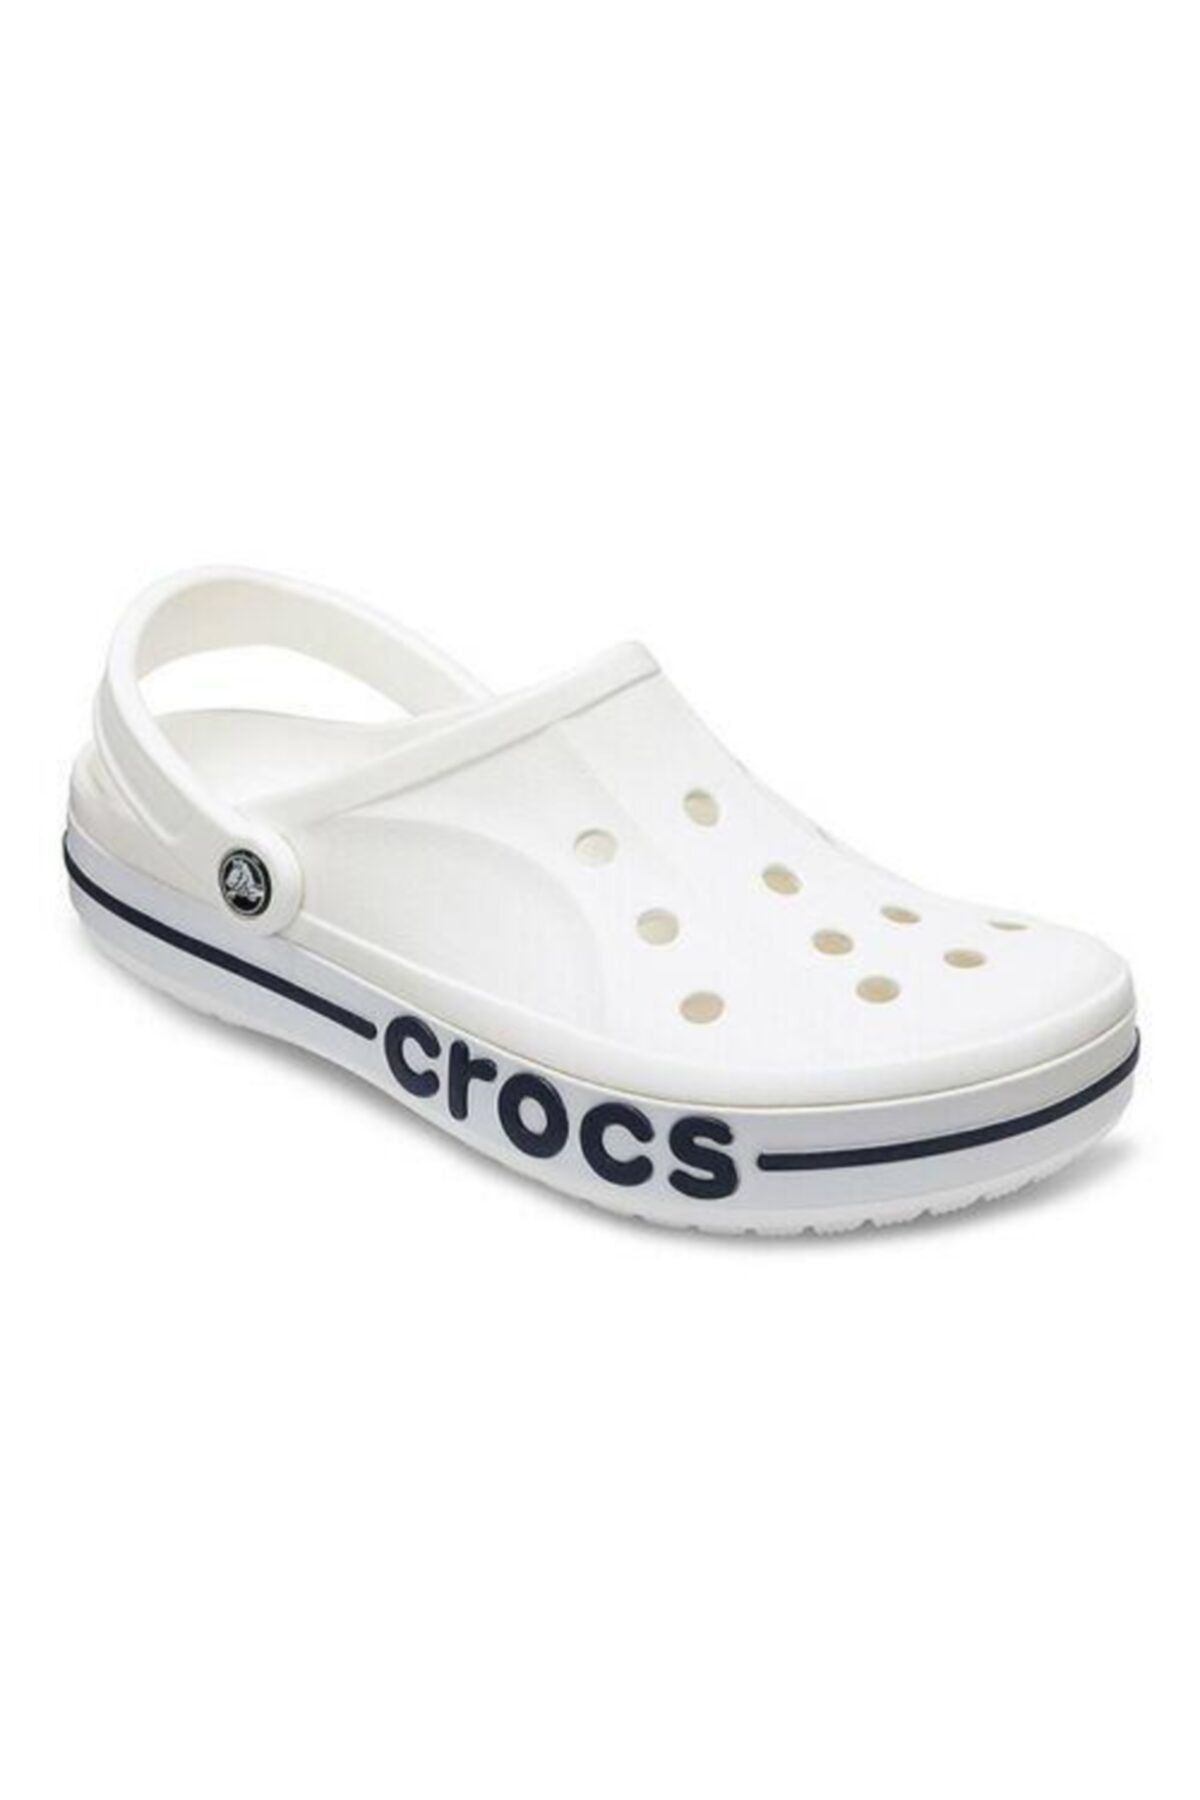 Crocs Bayaband Clog Beyaz Kadın Sandalet